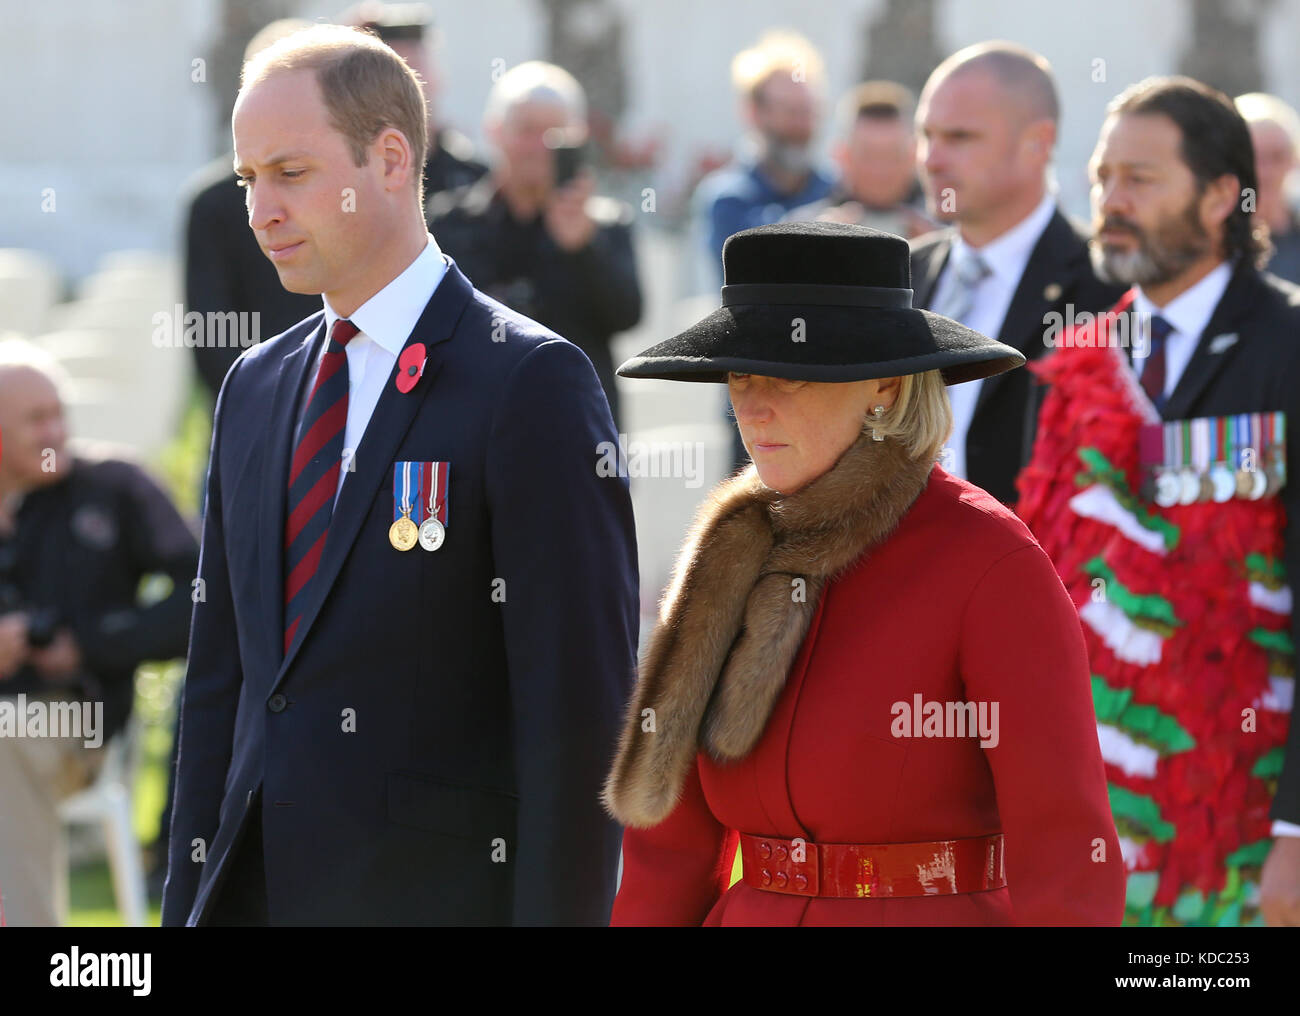 Le duc de Cambridge arrive accompagné de la princesse Astrid de Belgique (à droite) pour assister à la commémoration nationale néo-zélandaise de la bataille de Passchendaele au cimetière Tyne Cot, en Belgique. Banque D'Images